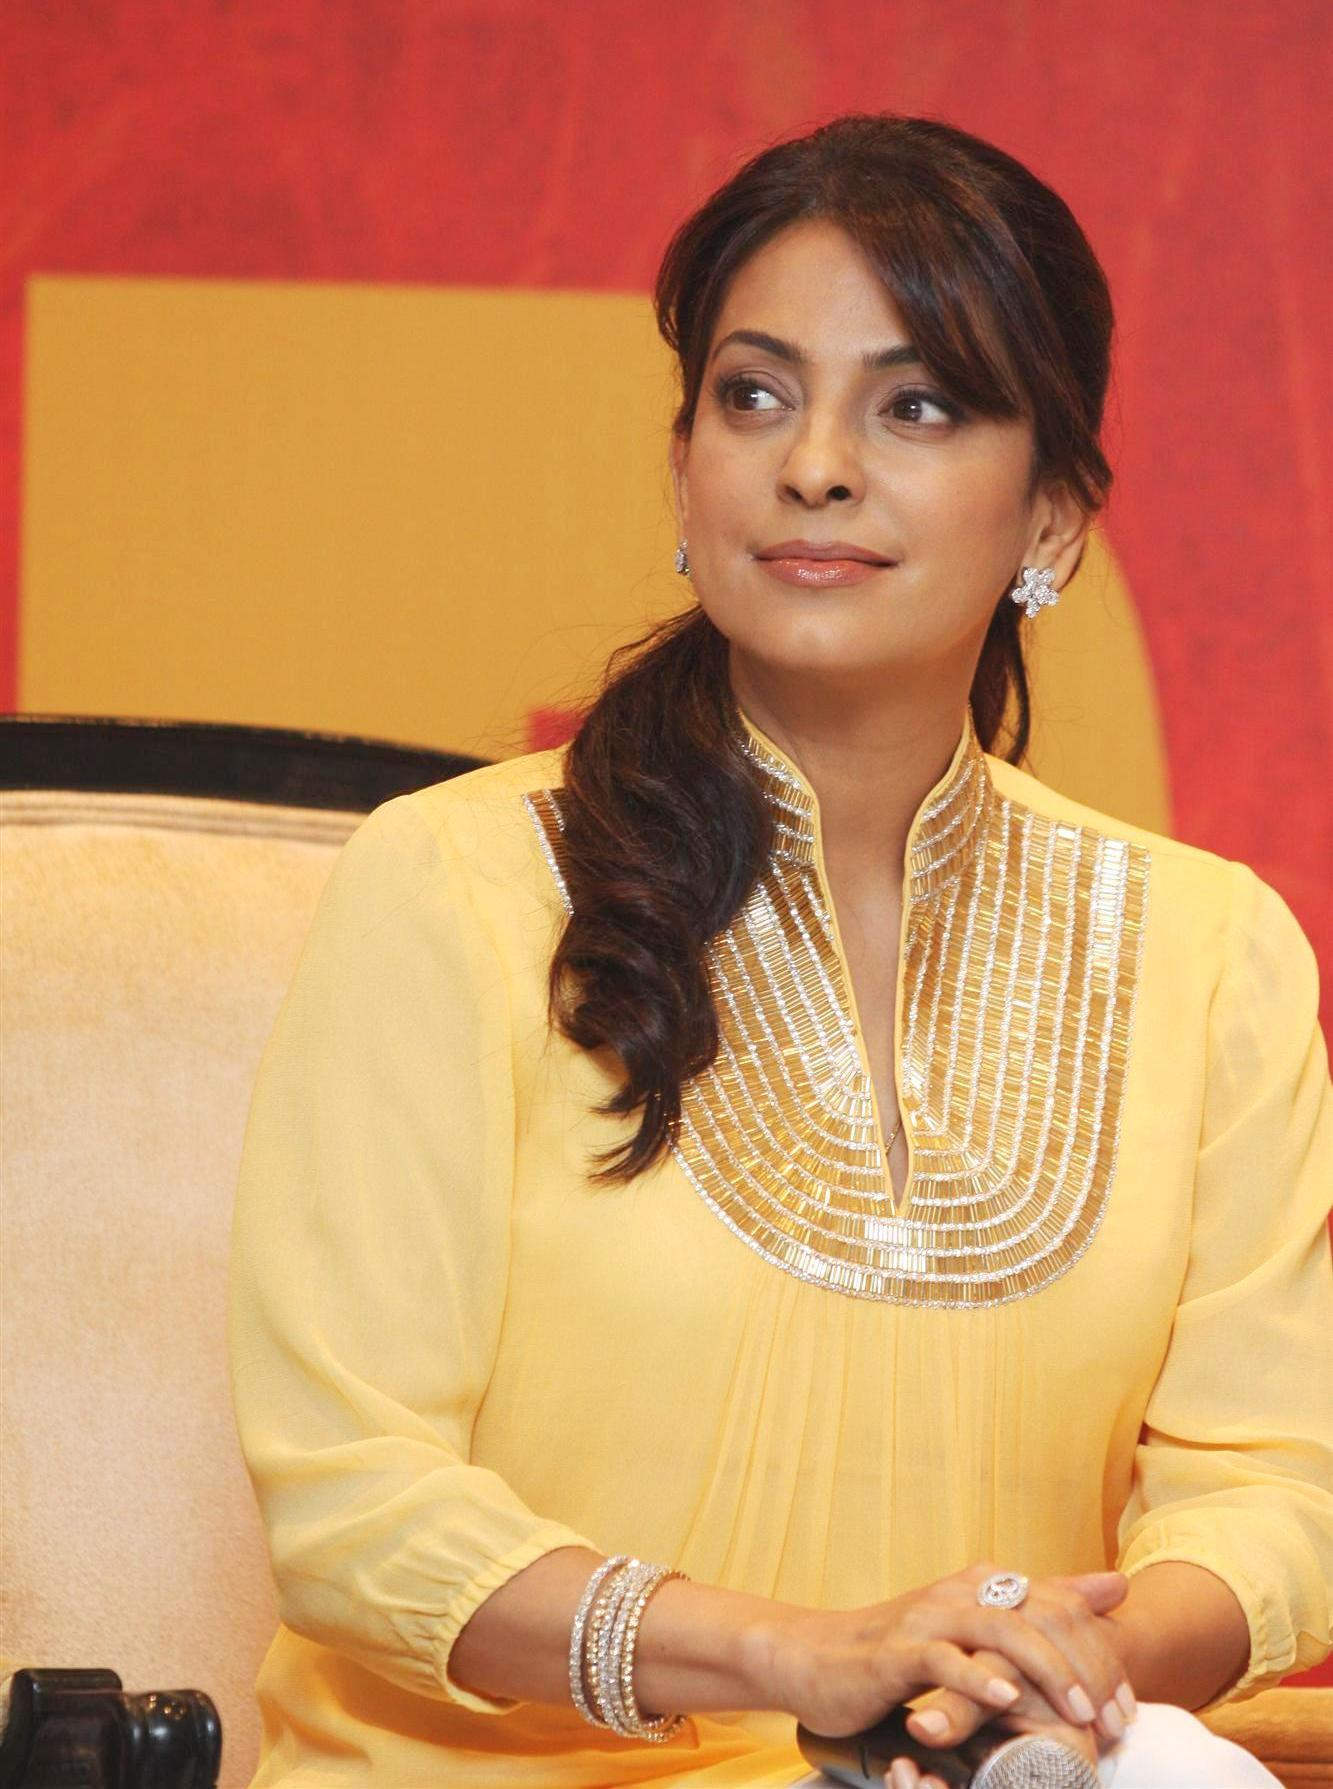 Juhi Chawla Looking Stunning In Yellow Dress